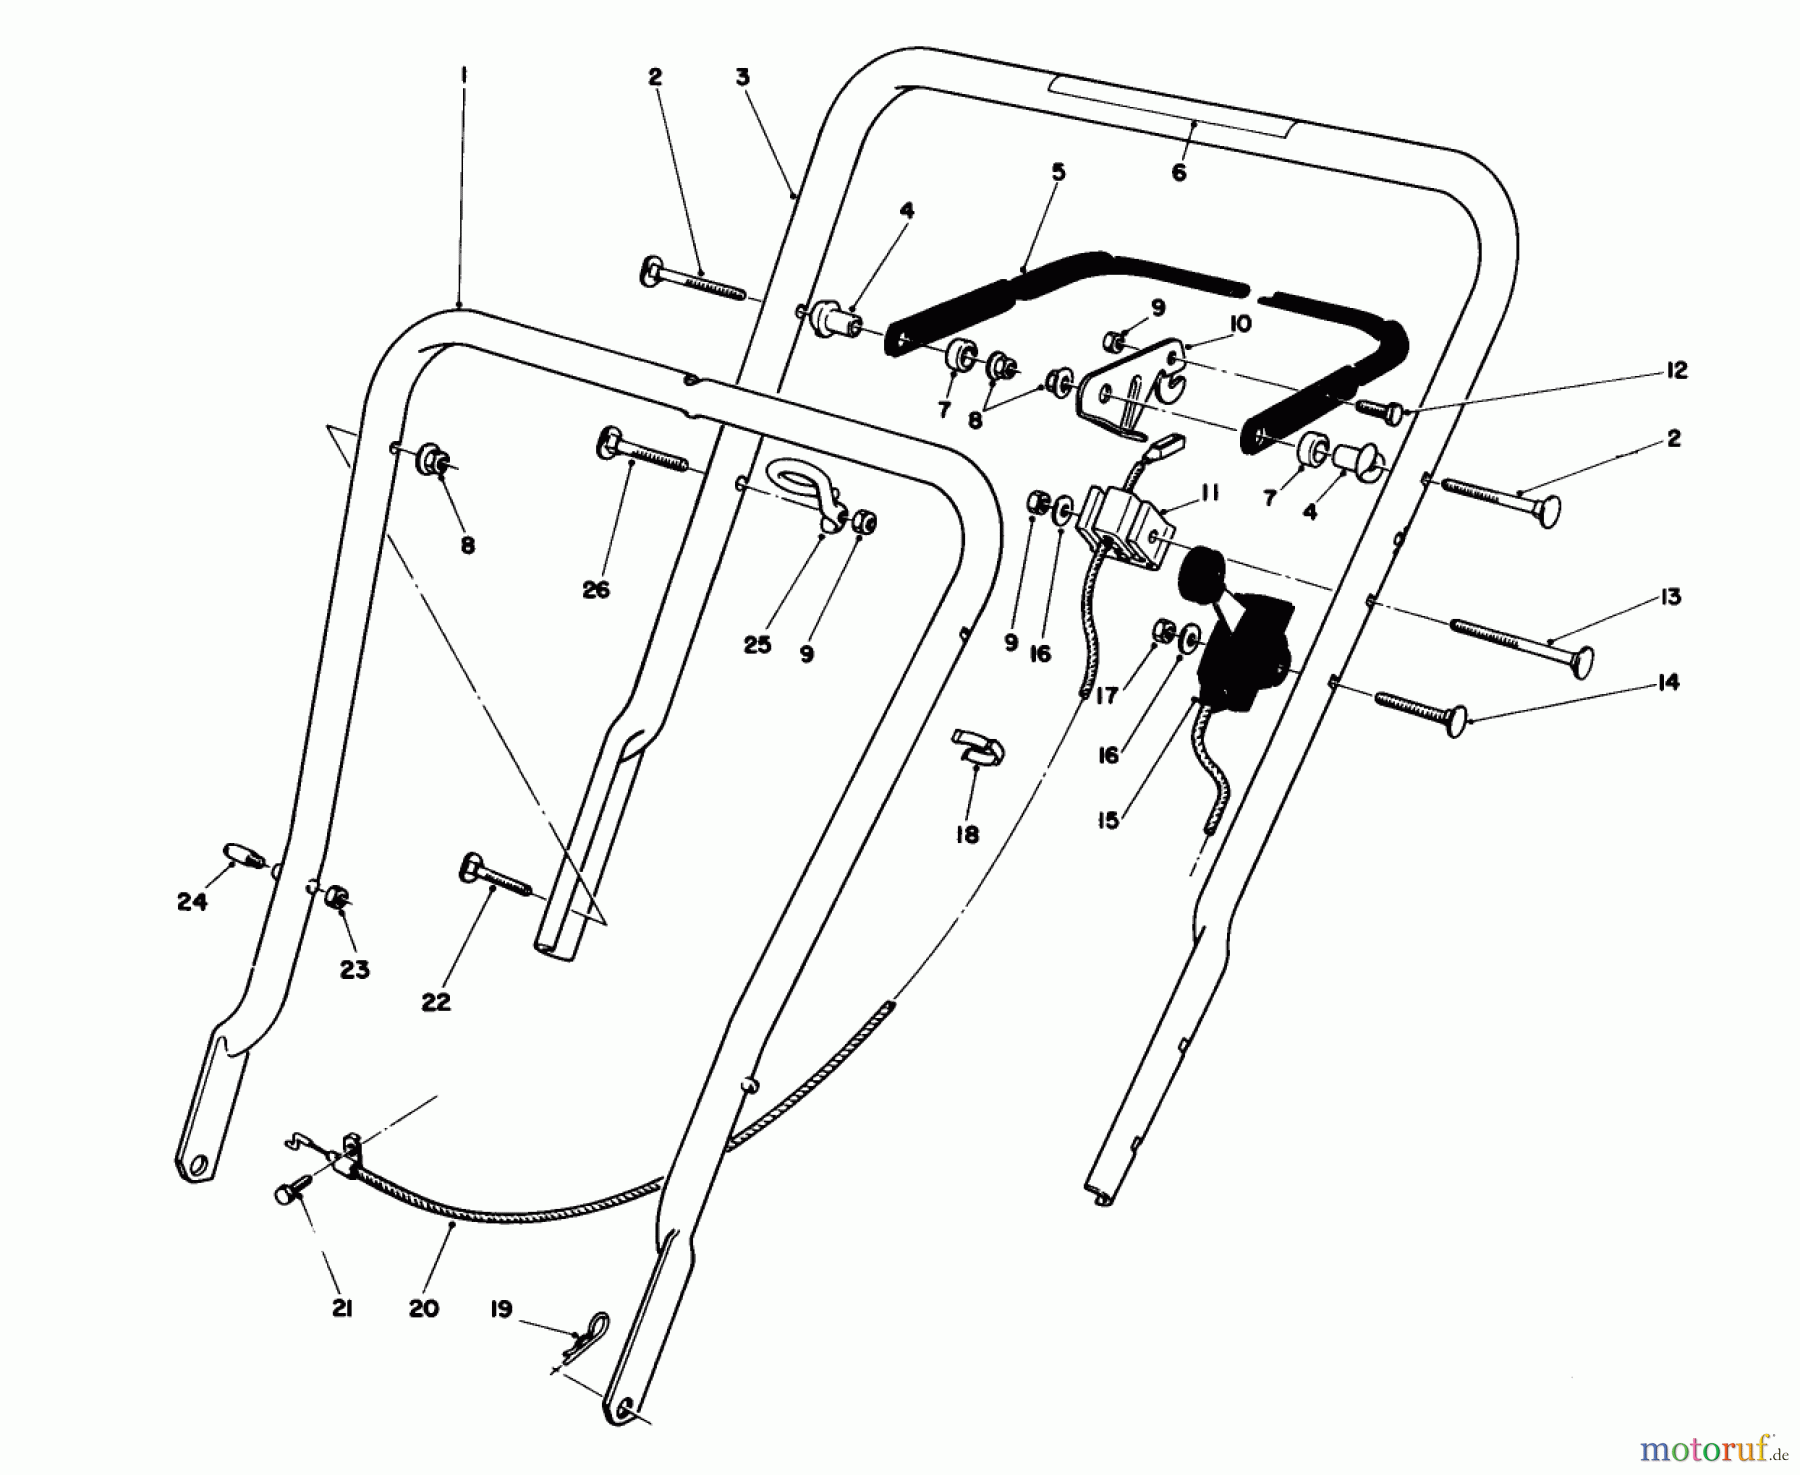  Toro Neu Mowers, Walk-Behind Seite 1 16575 - Toro Lawnmower, 1988 (8000001-8012678) HANDLE ASSEMBLY